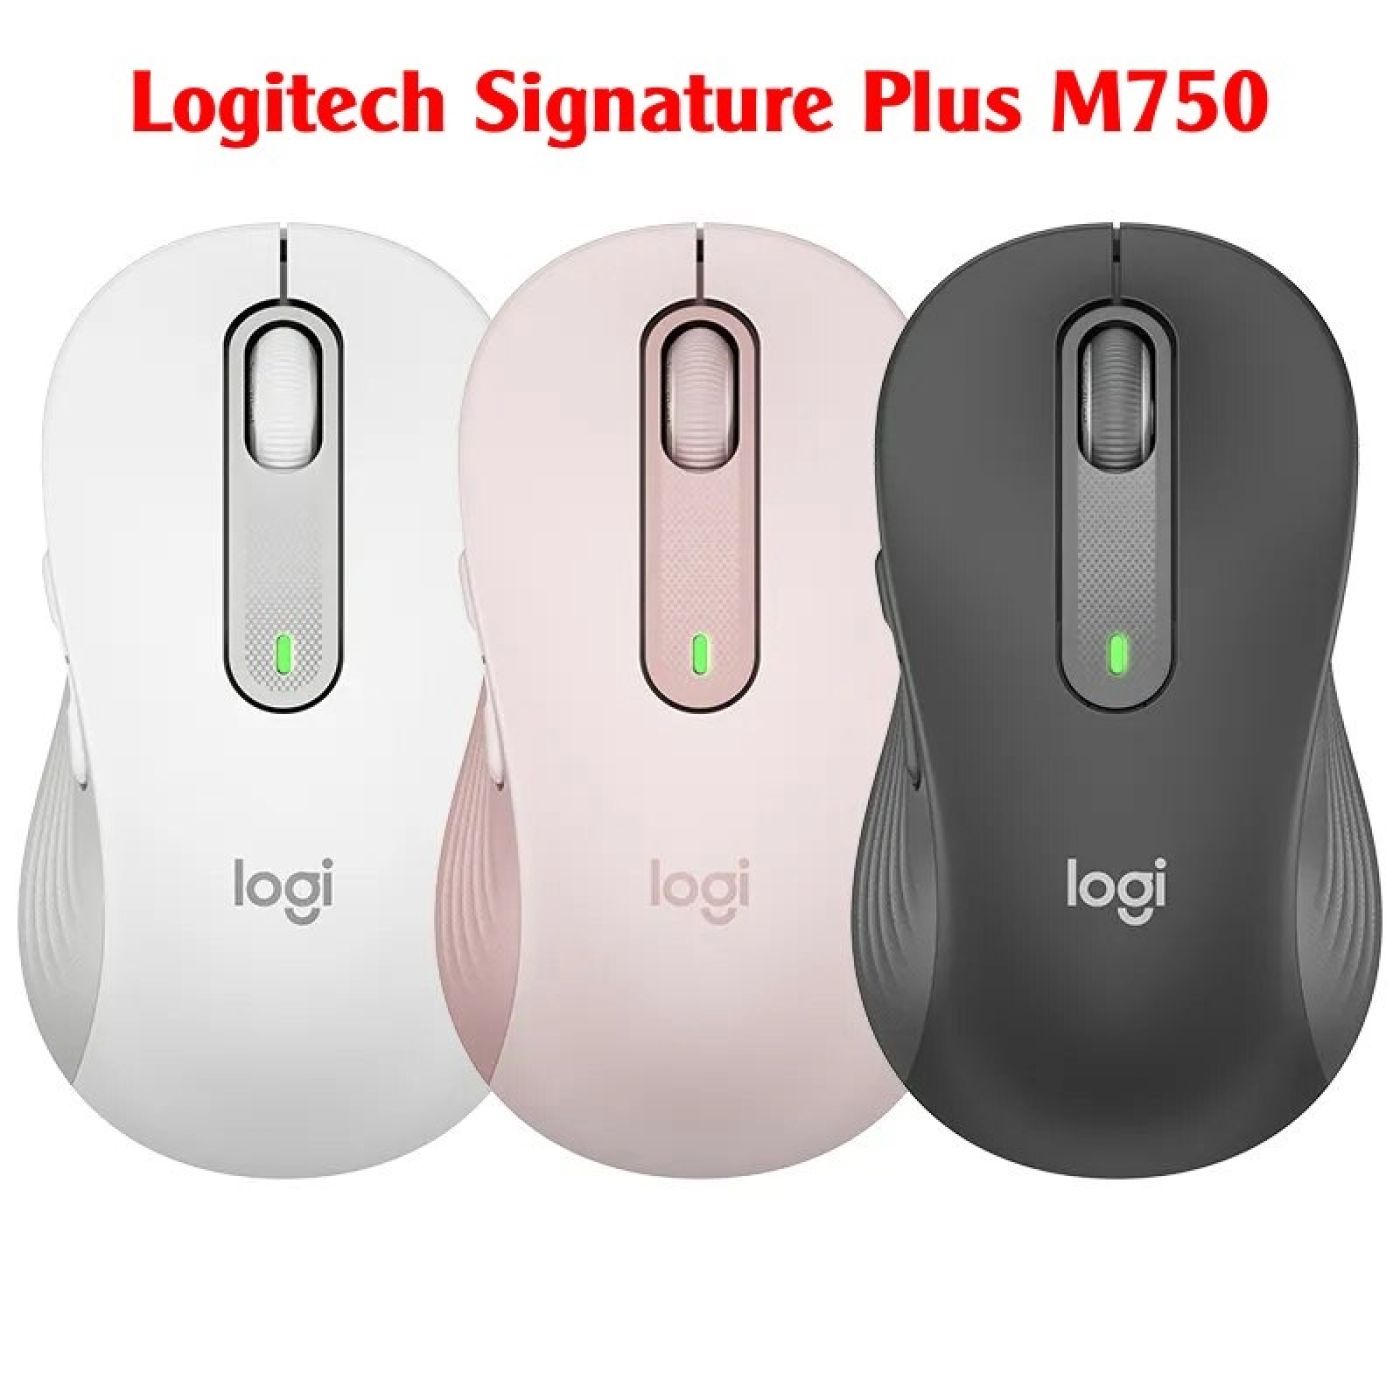 Chuột không dây chế độ kép Logitech Signature Plus M750 2000DPI - Hàng Fake